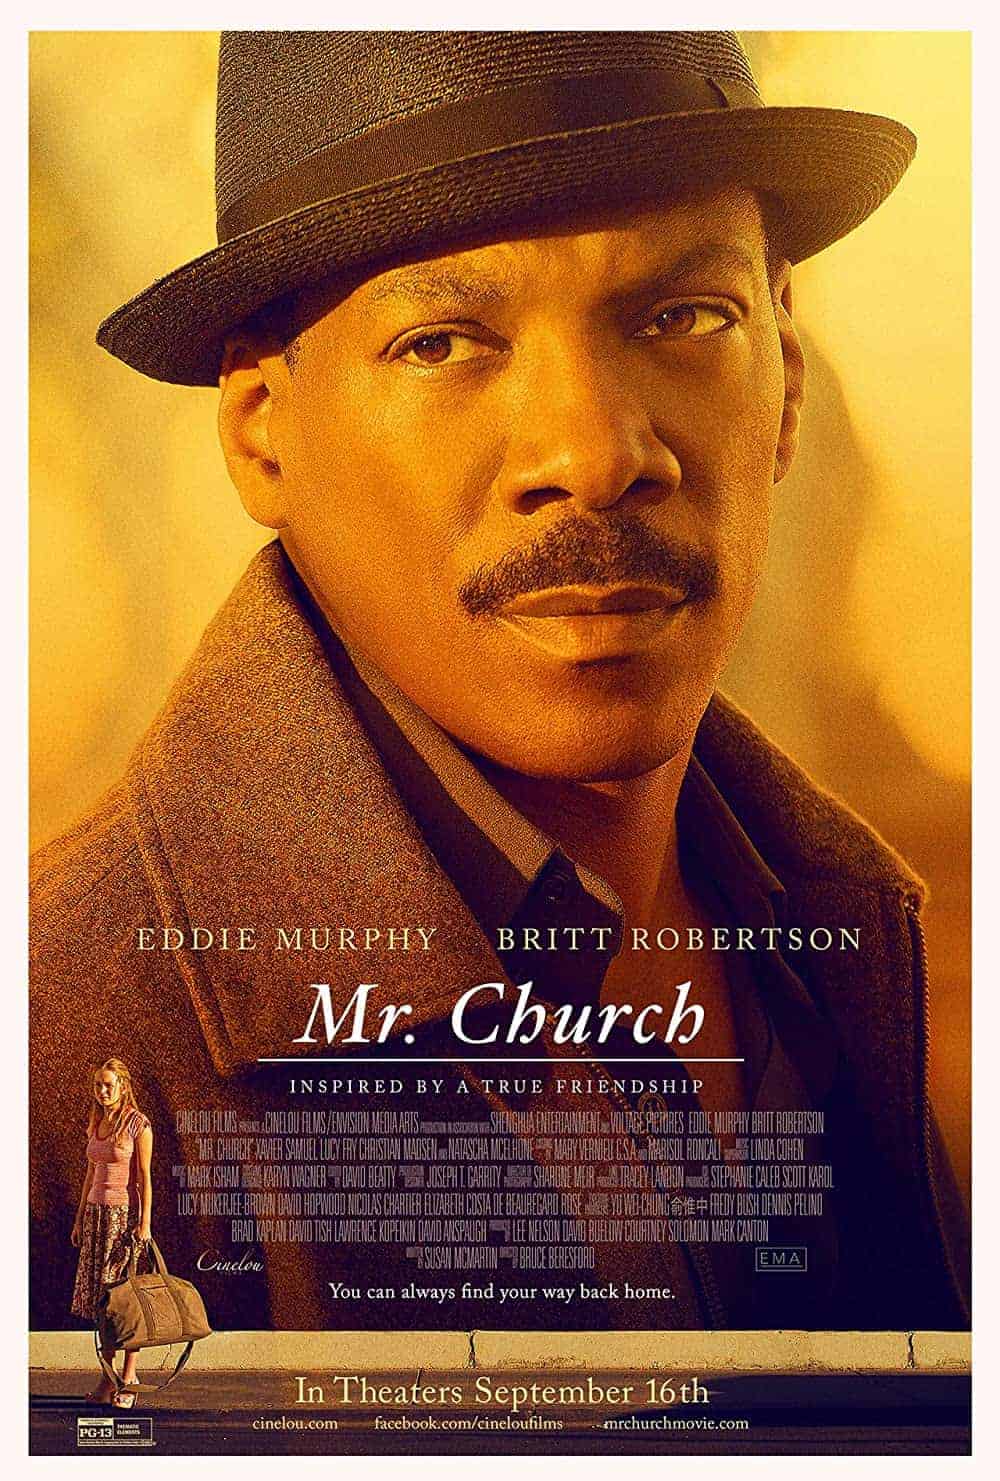 Mr. Church Best Eddie Murphy Movies (Ranked)